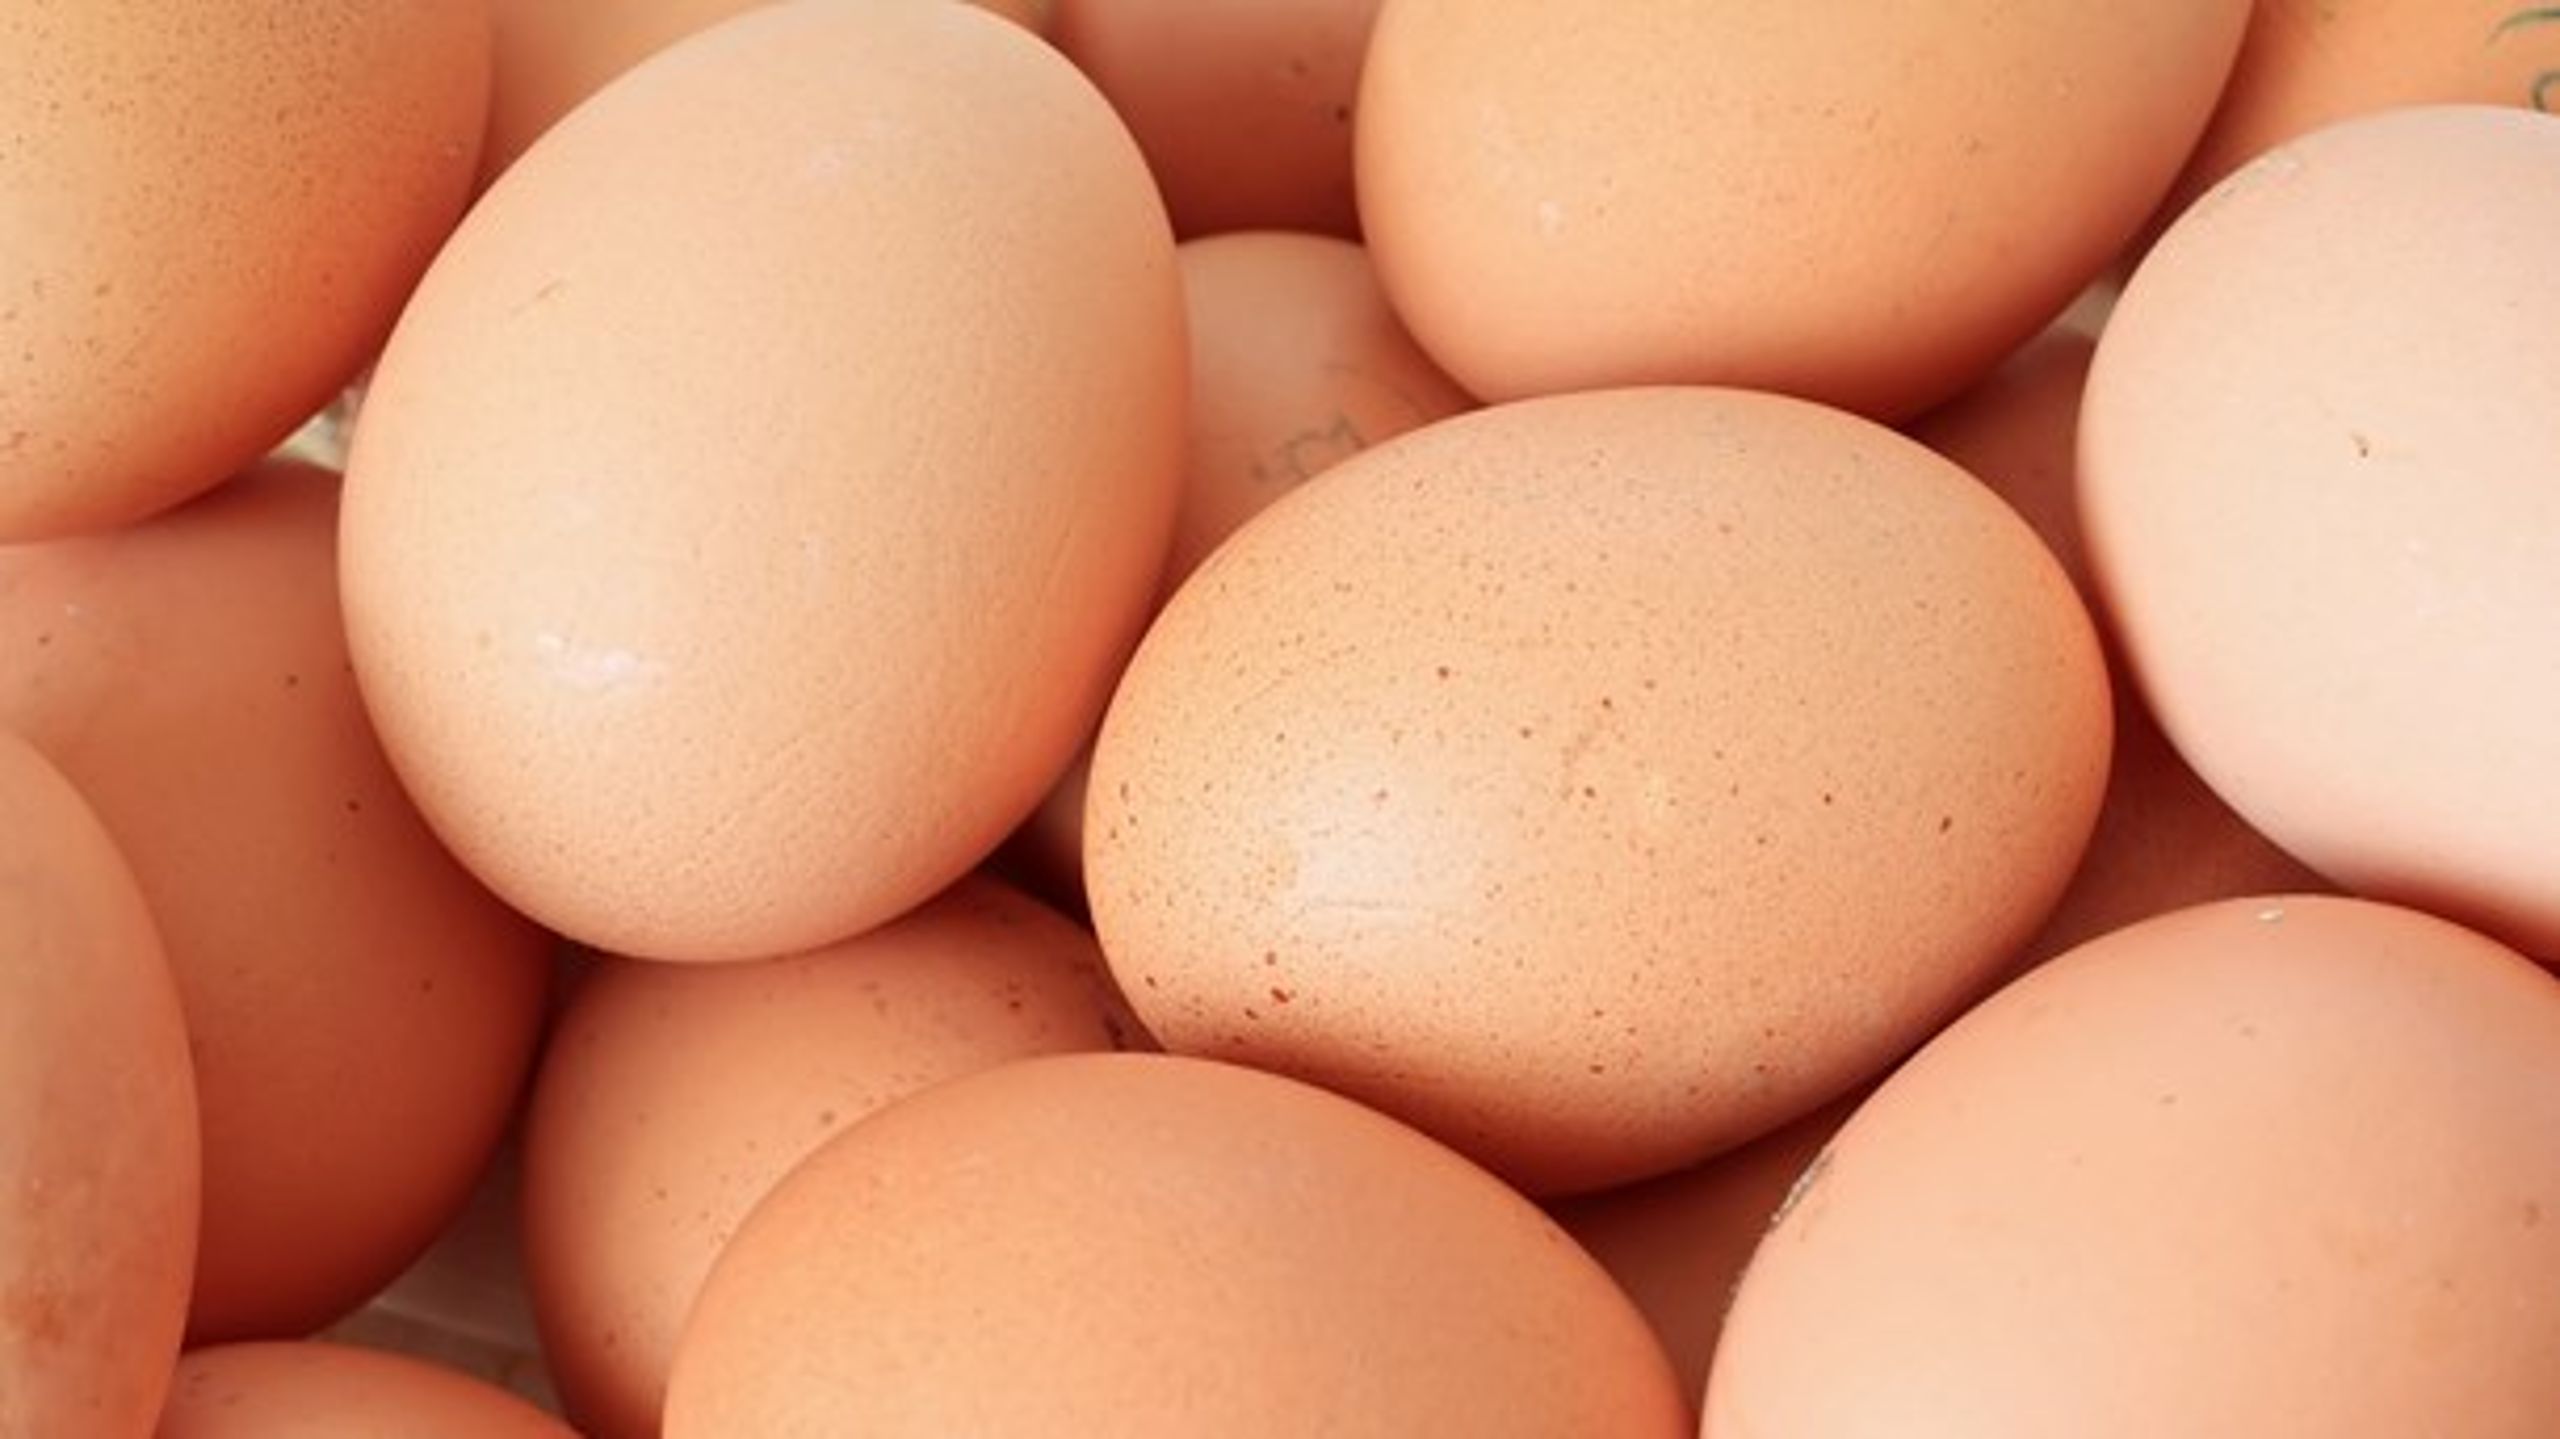 Fødevarestyrelsen har ikke sagt, at danske æg er sundere end udenlandske, siger specialkonsulent Erik Jepsen fra Fødevarestyrelsen.